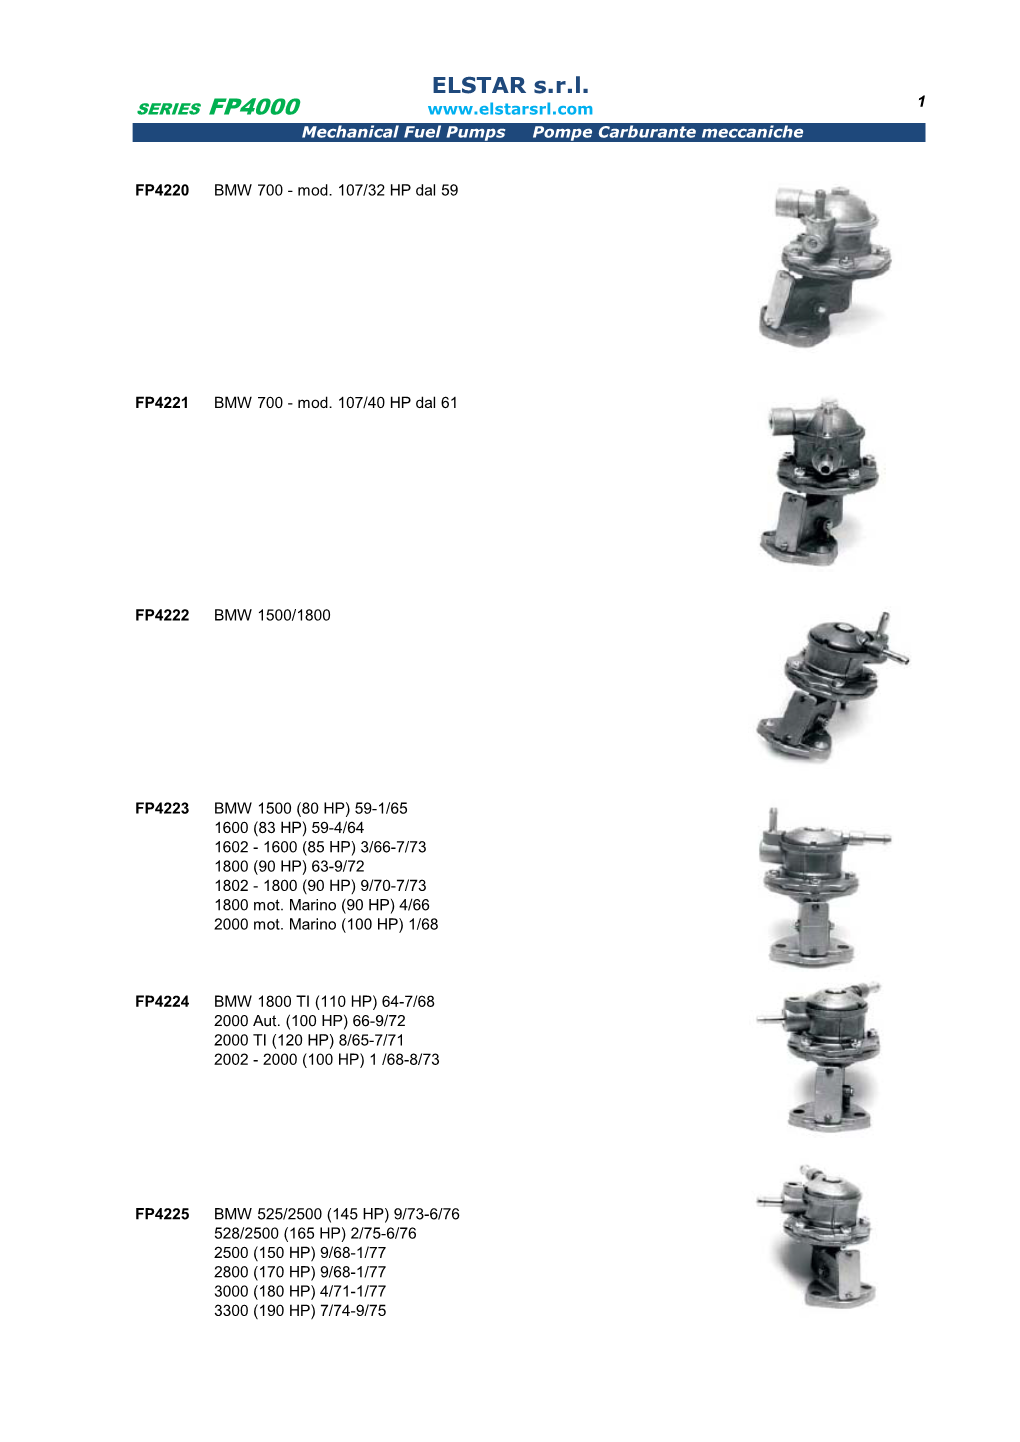 FP4000 Mechanical Fuel Pumps Pompe Carburante Meccaniche